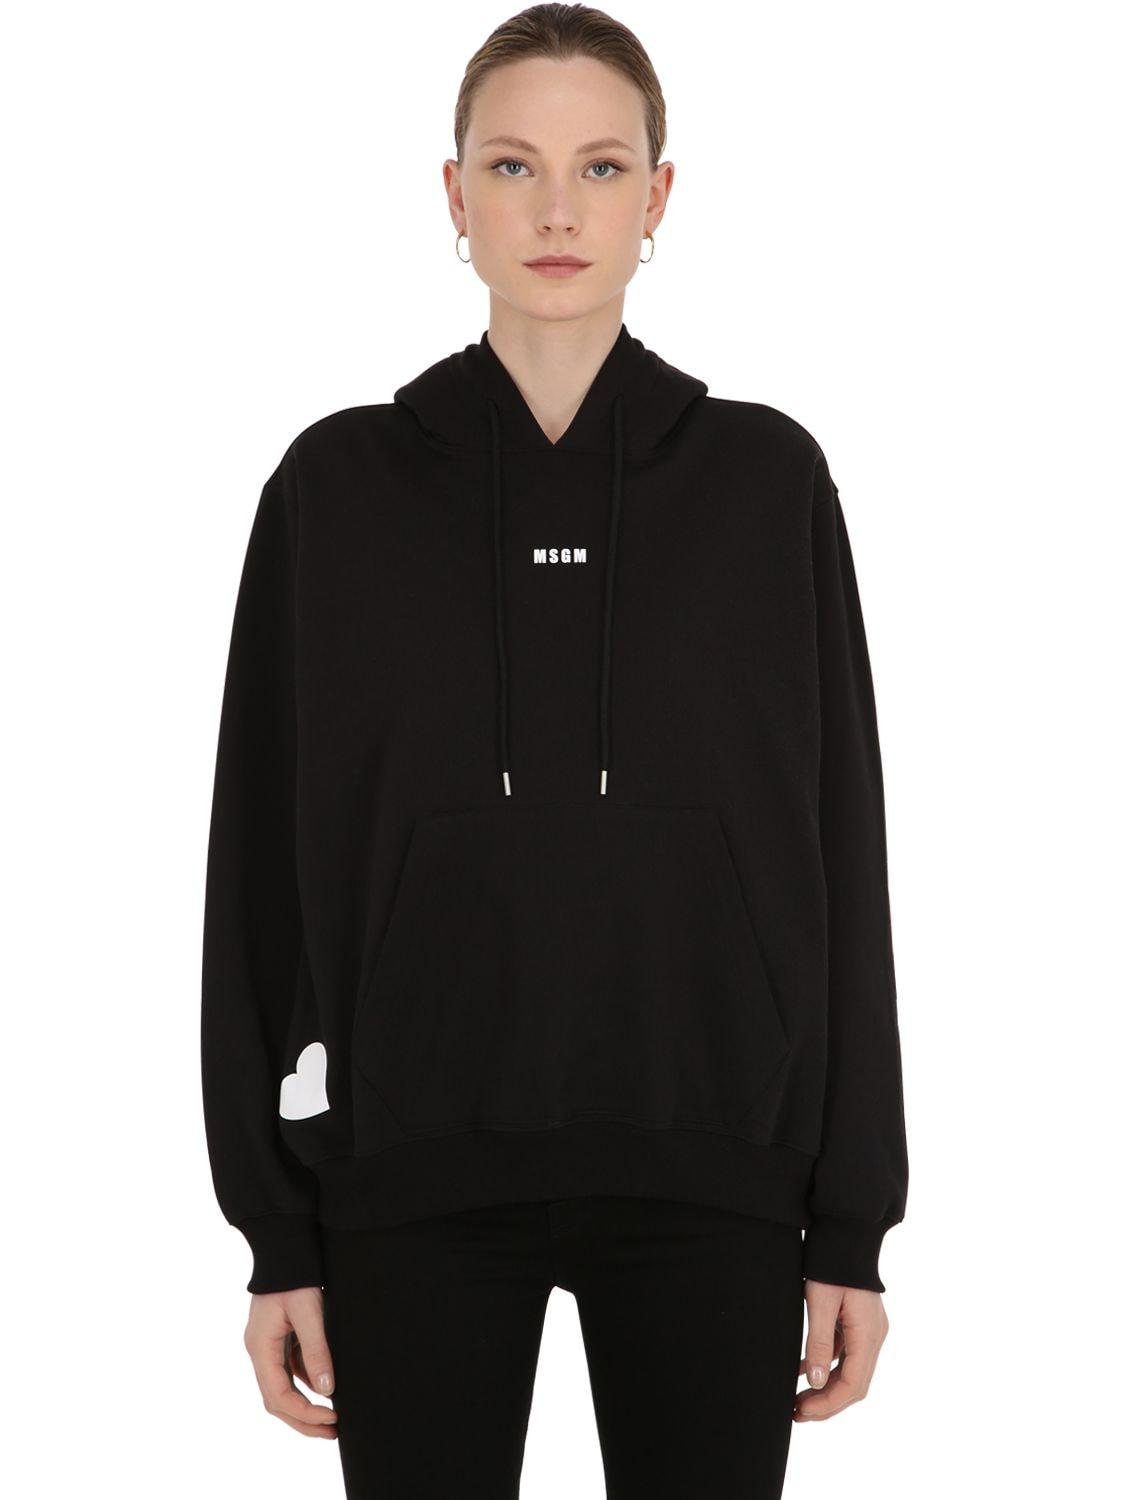 MSGM Exclusive Love Print Sweatshirt Hoodie in Black - Lyst